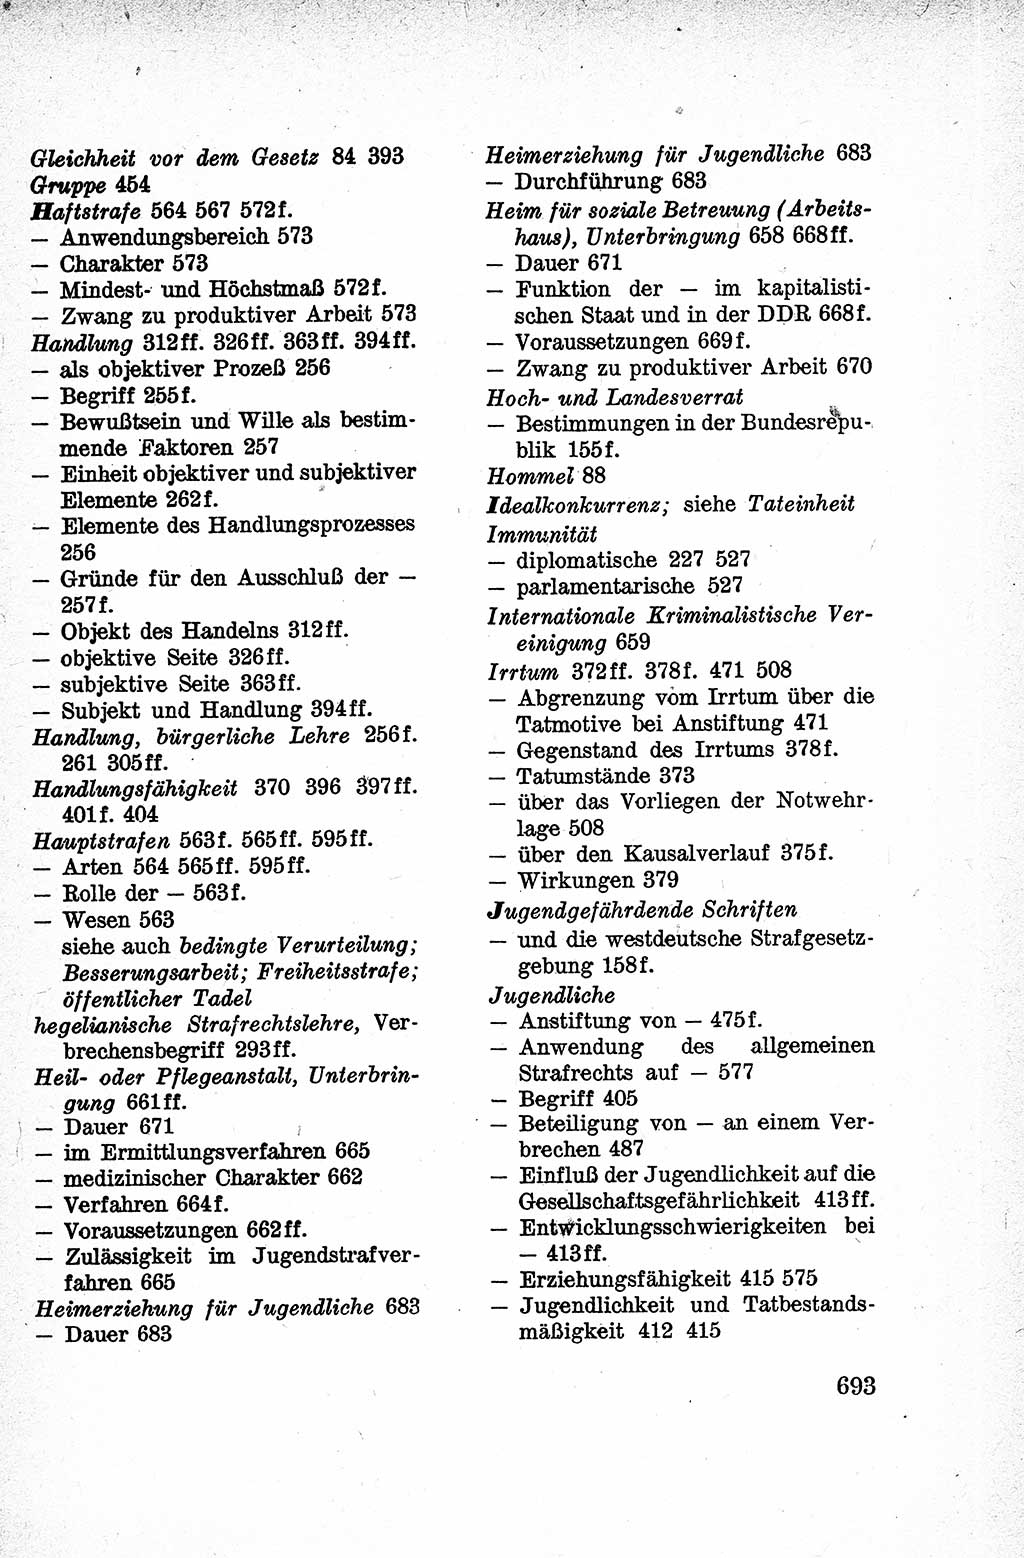 Lehrbuch des Strafrechts der Deutschen Demokratischen Republik (DDR), Allgemeiner Teil 1959, Seite 693 (Lb. Strafr. DDR AT 1959, S. 693)